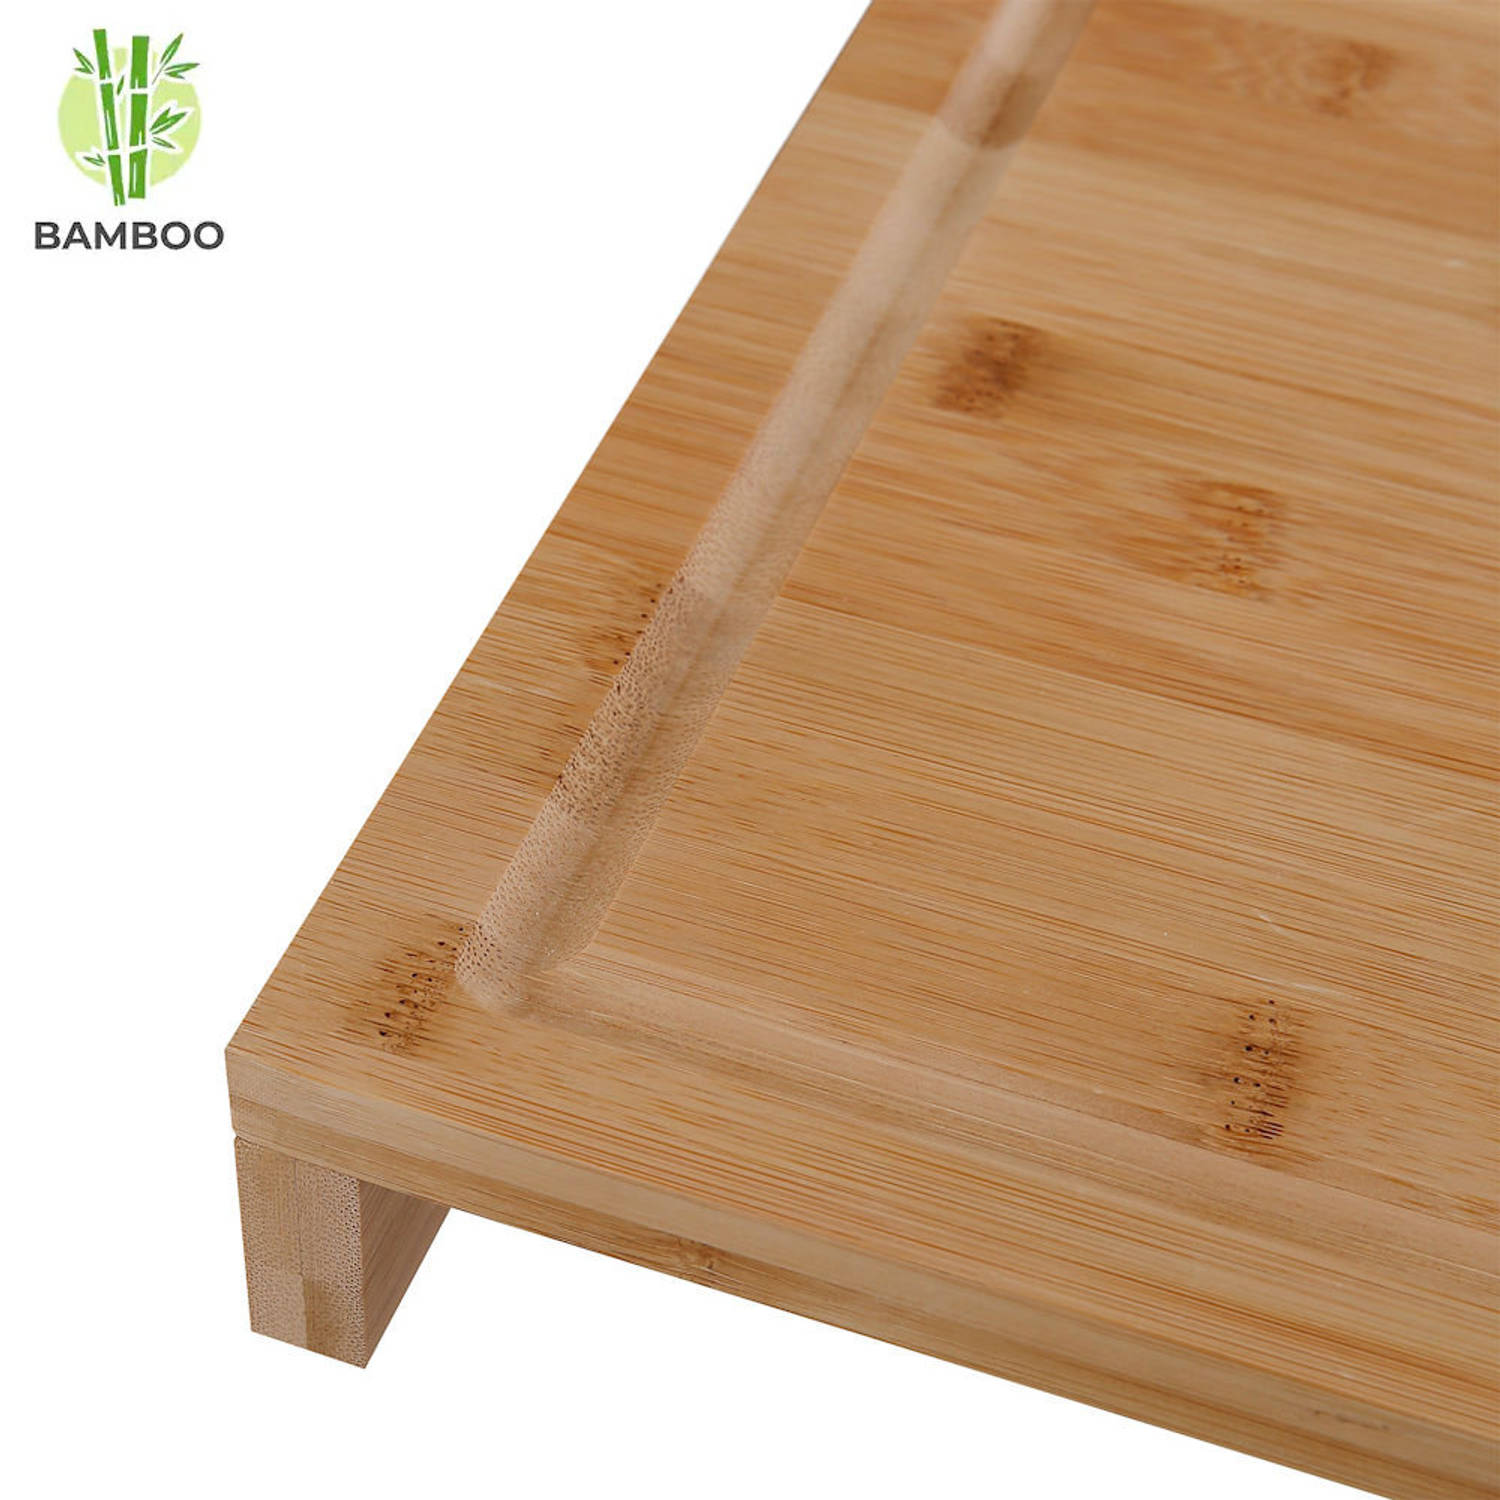 registreren helpen Krijger Houten snijplank van Bamboe hout met saprand - Stevige kwaliteit - | Blokker